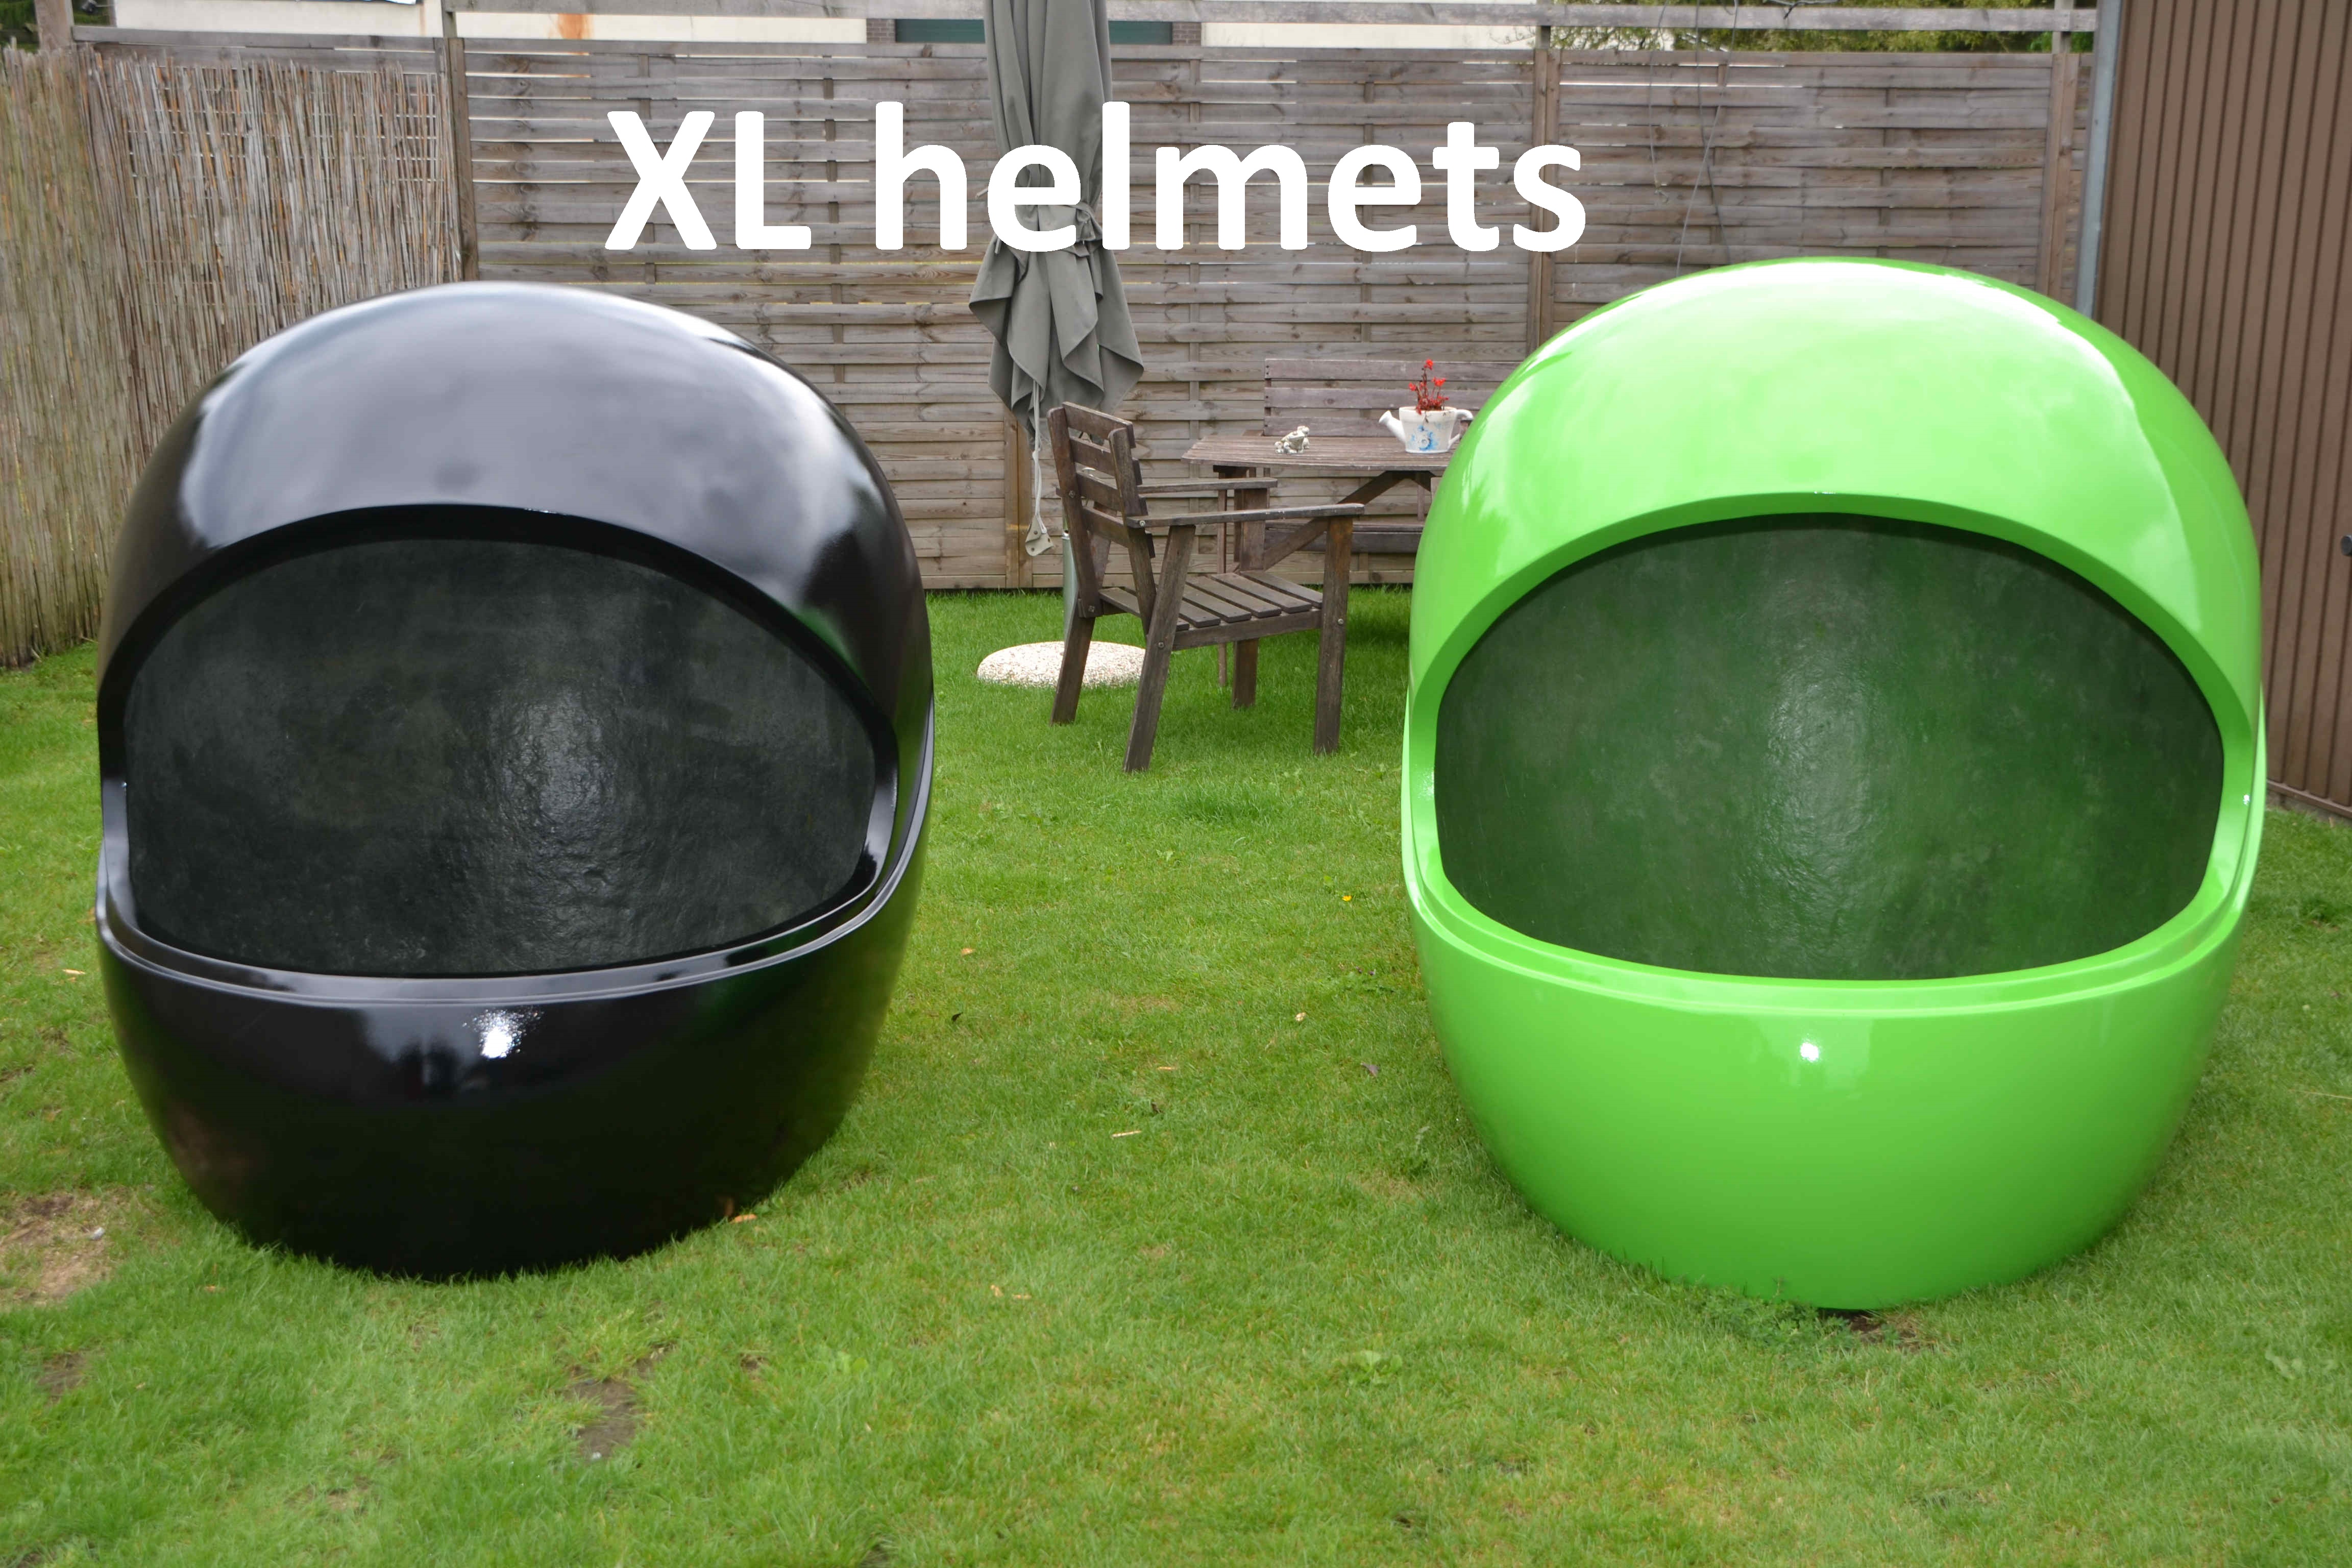 afbeelding van een grote polyester helm, XL helm, XL helmets